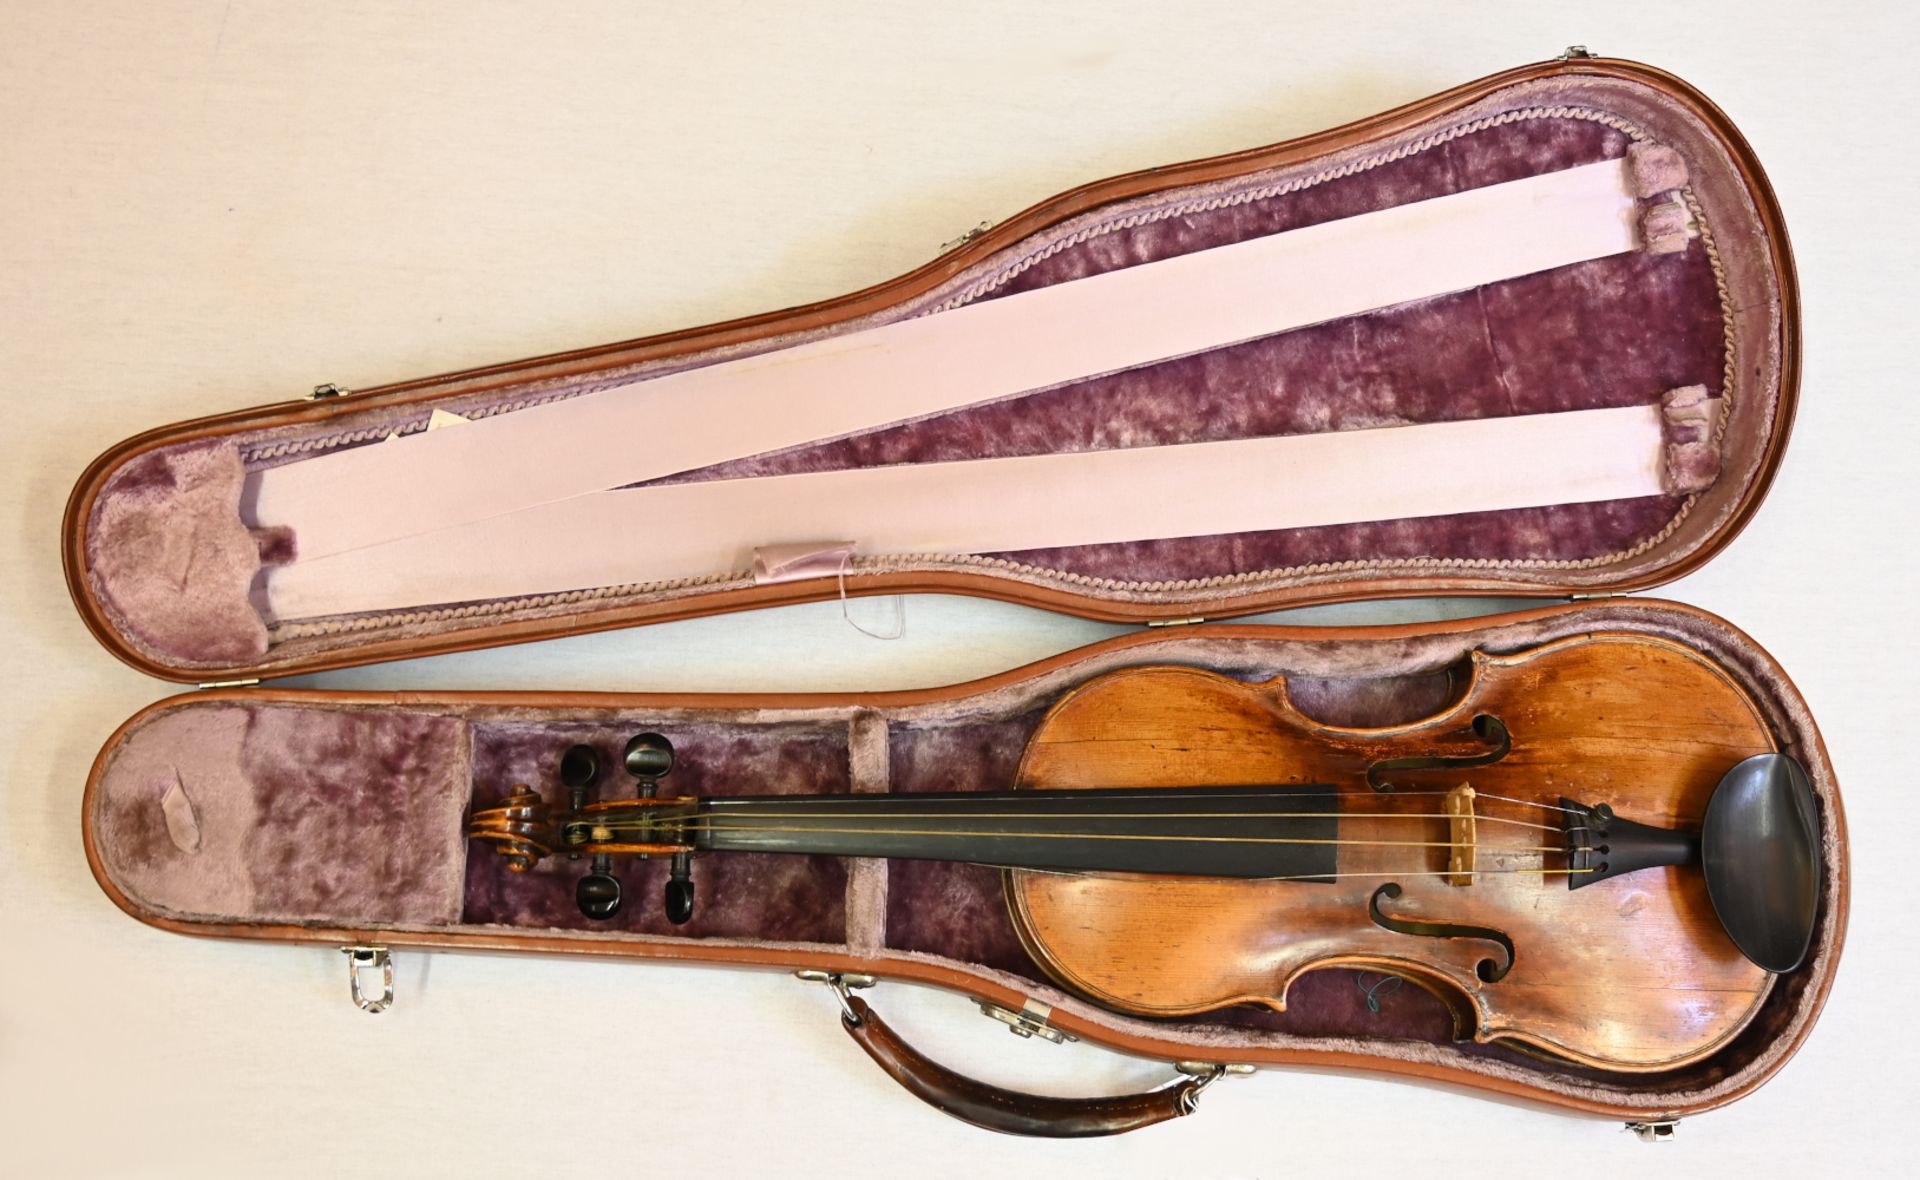 1 Geige rücks. bez. mit Brennstempel "WAGNER" wohl Allongé-Modell, Schnecke/Wirbelkasten aus Birnbau - Bild 3 aus 3